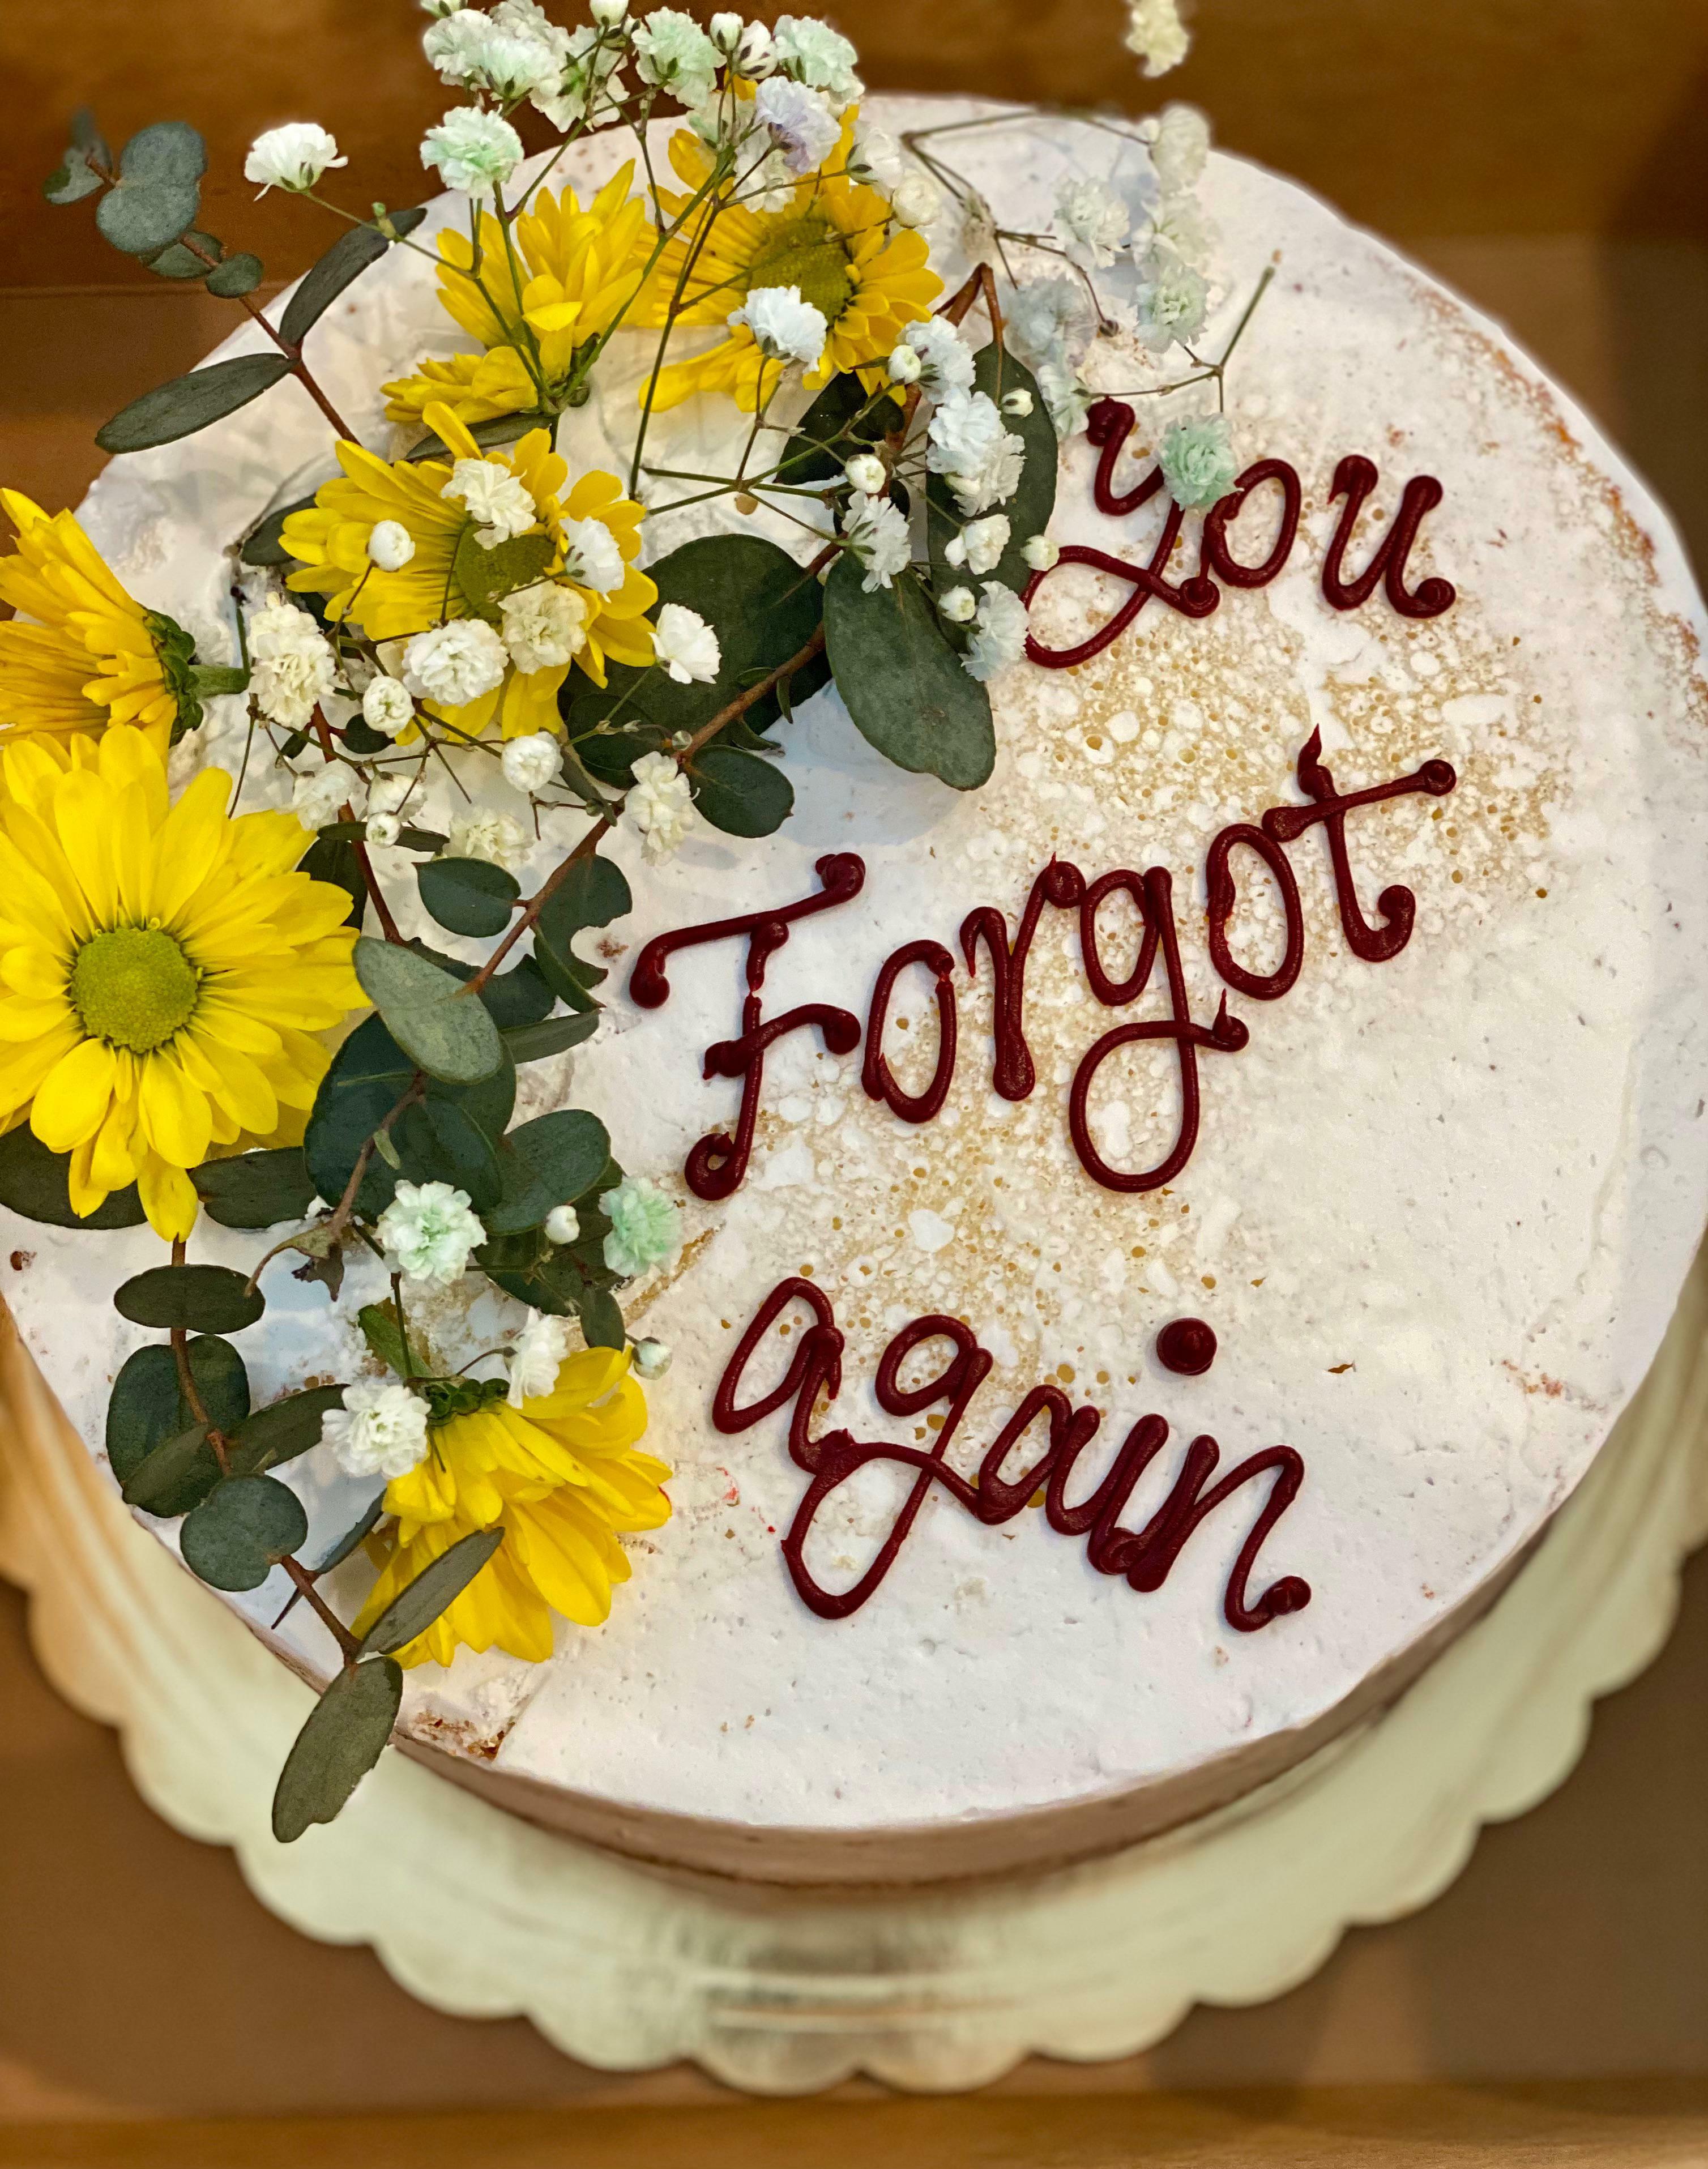 J'ai acheté un gâteau de luxe pour mon mari à l'occasion de notre anniversaire de mariage.